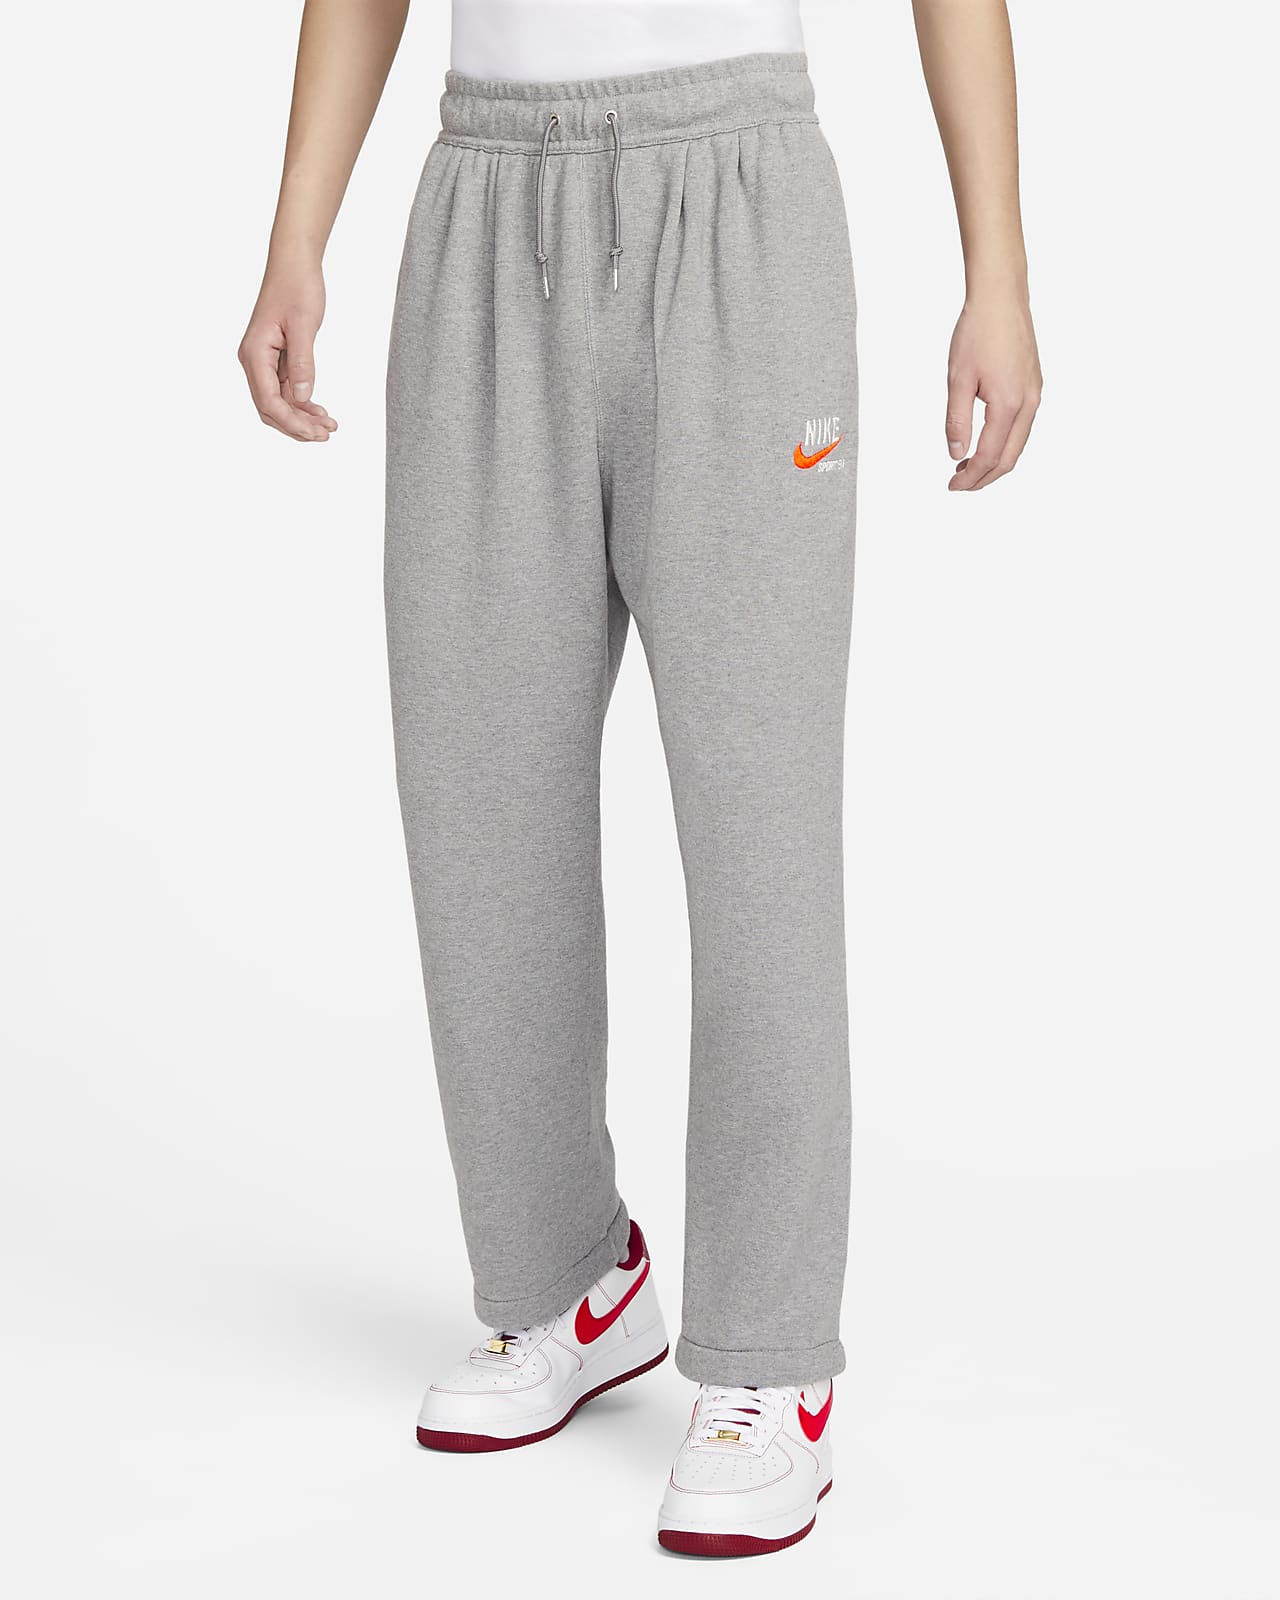 Nike Sportswear Trend Men's Fleece Pants